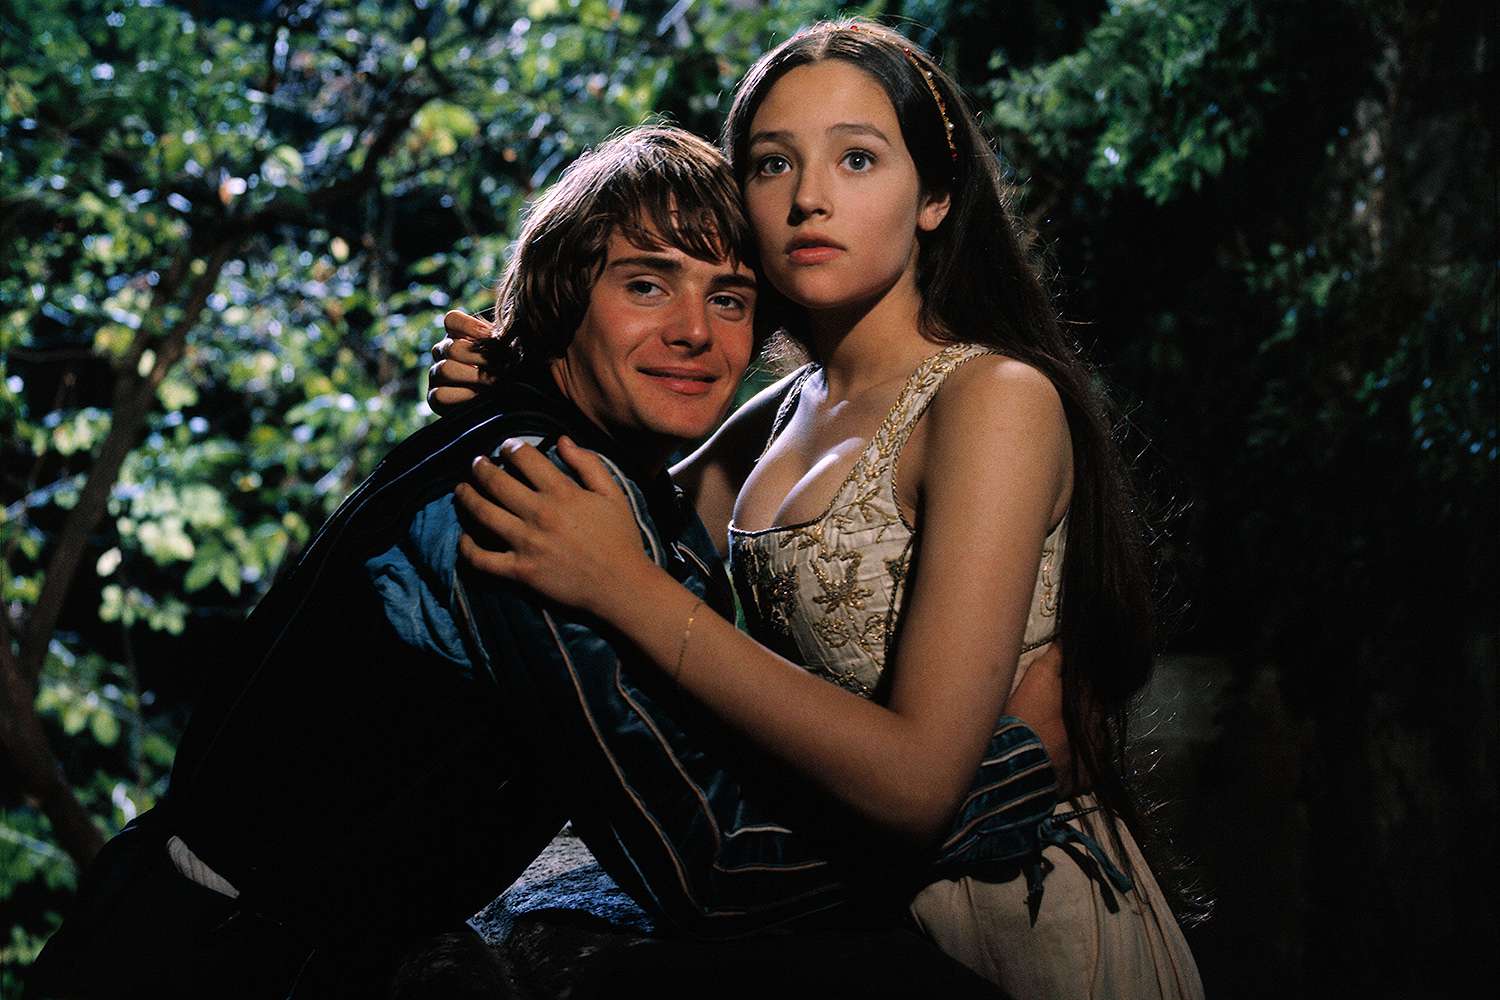 Ромео с Джульетты дожили до старости и внезапно захотели денюх на митушной волне.